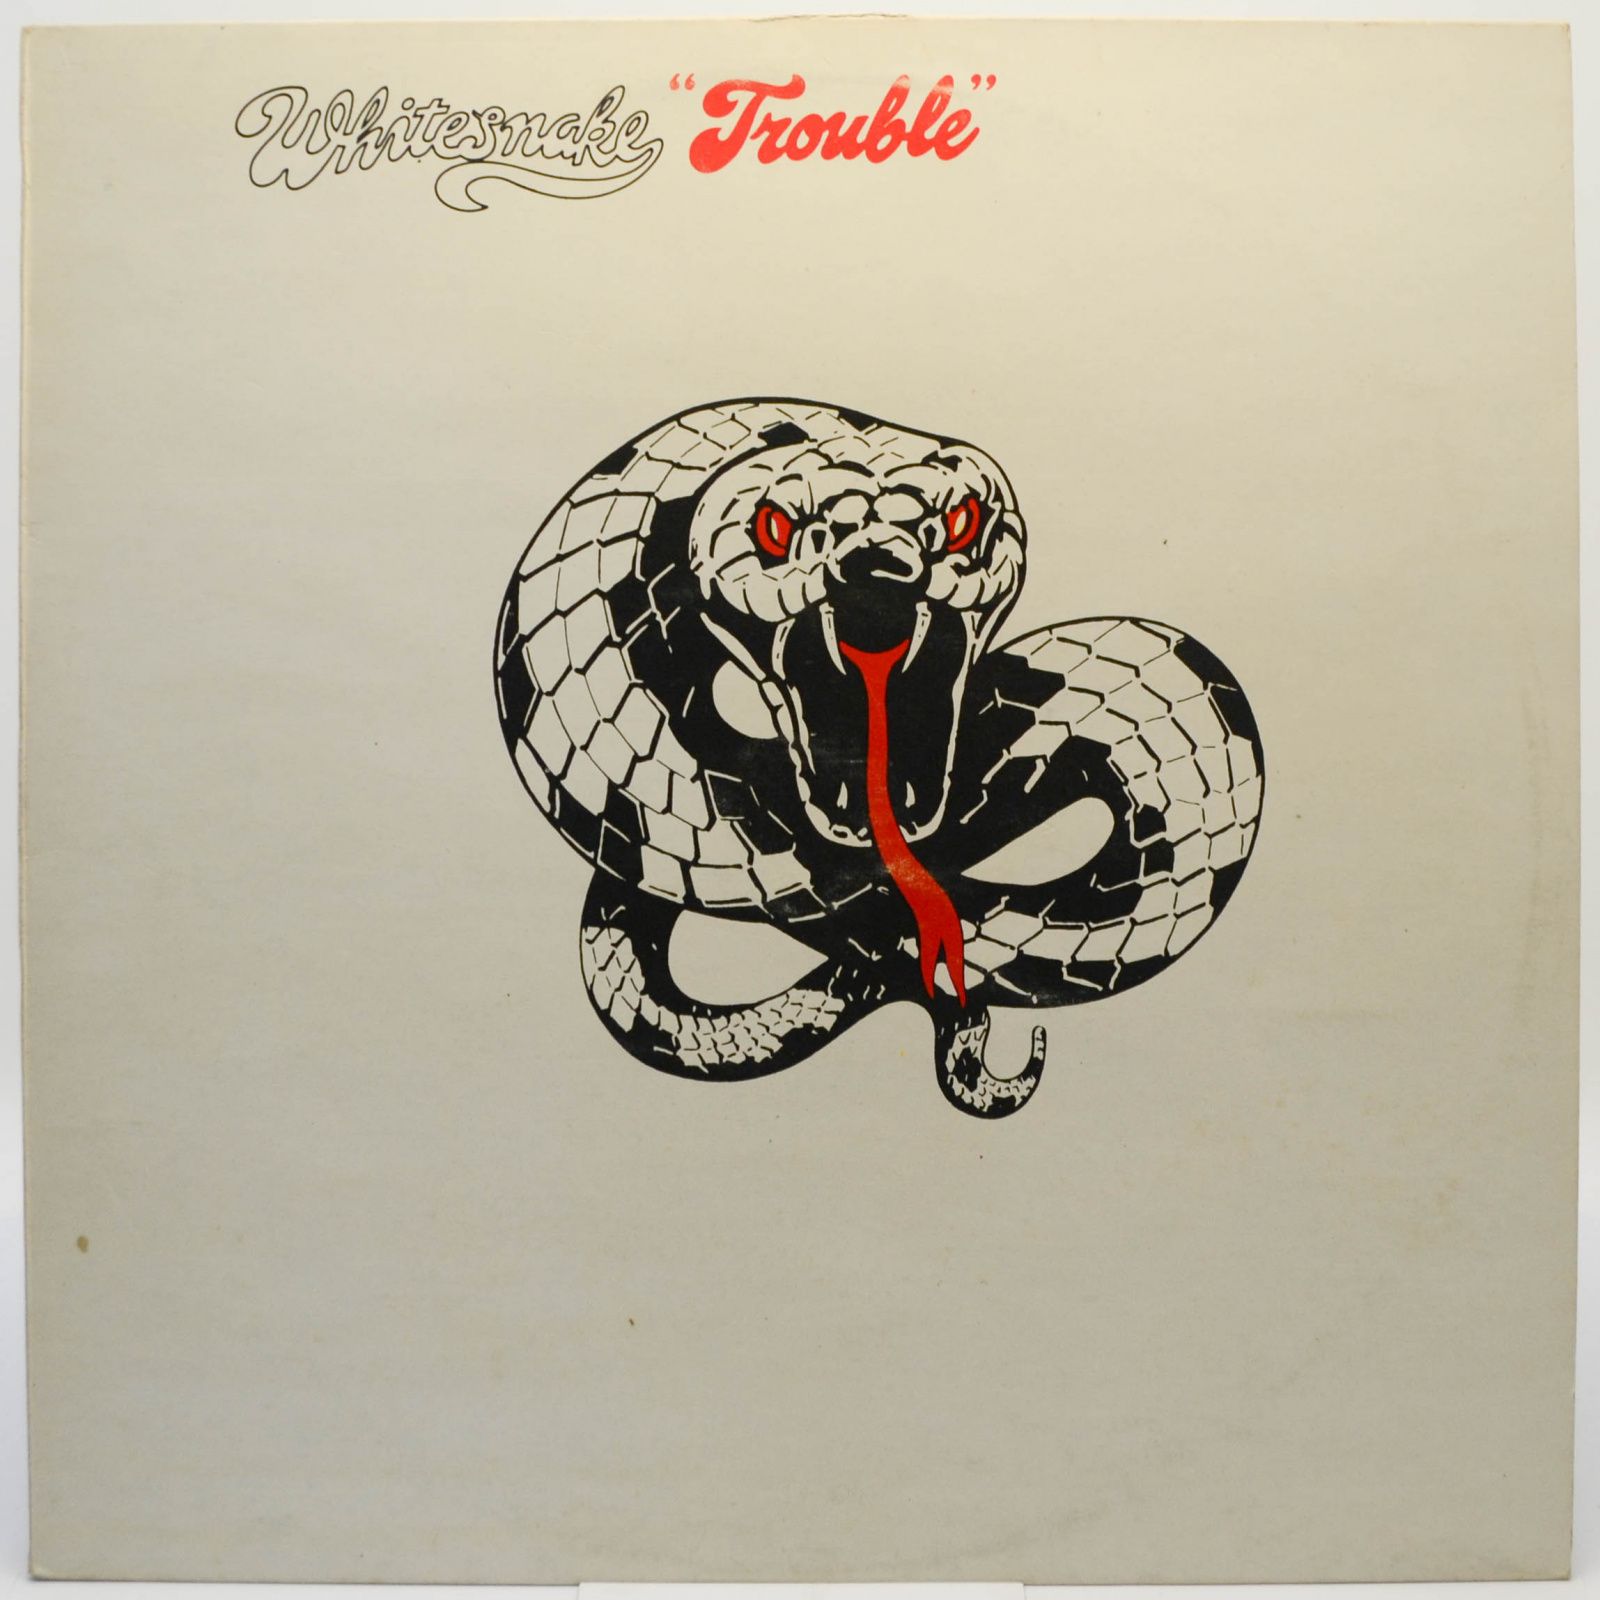 Whitesnake — Trouble, 1985